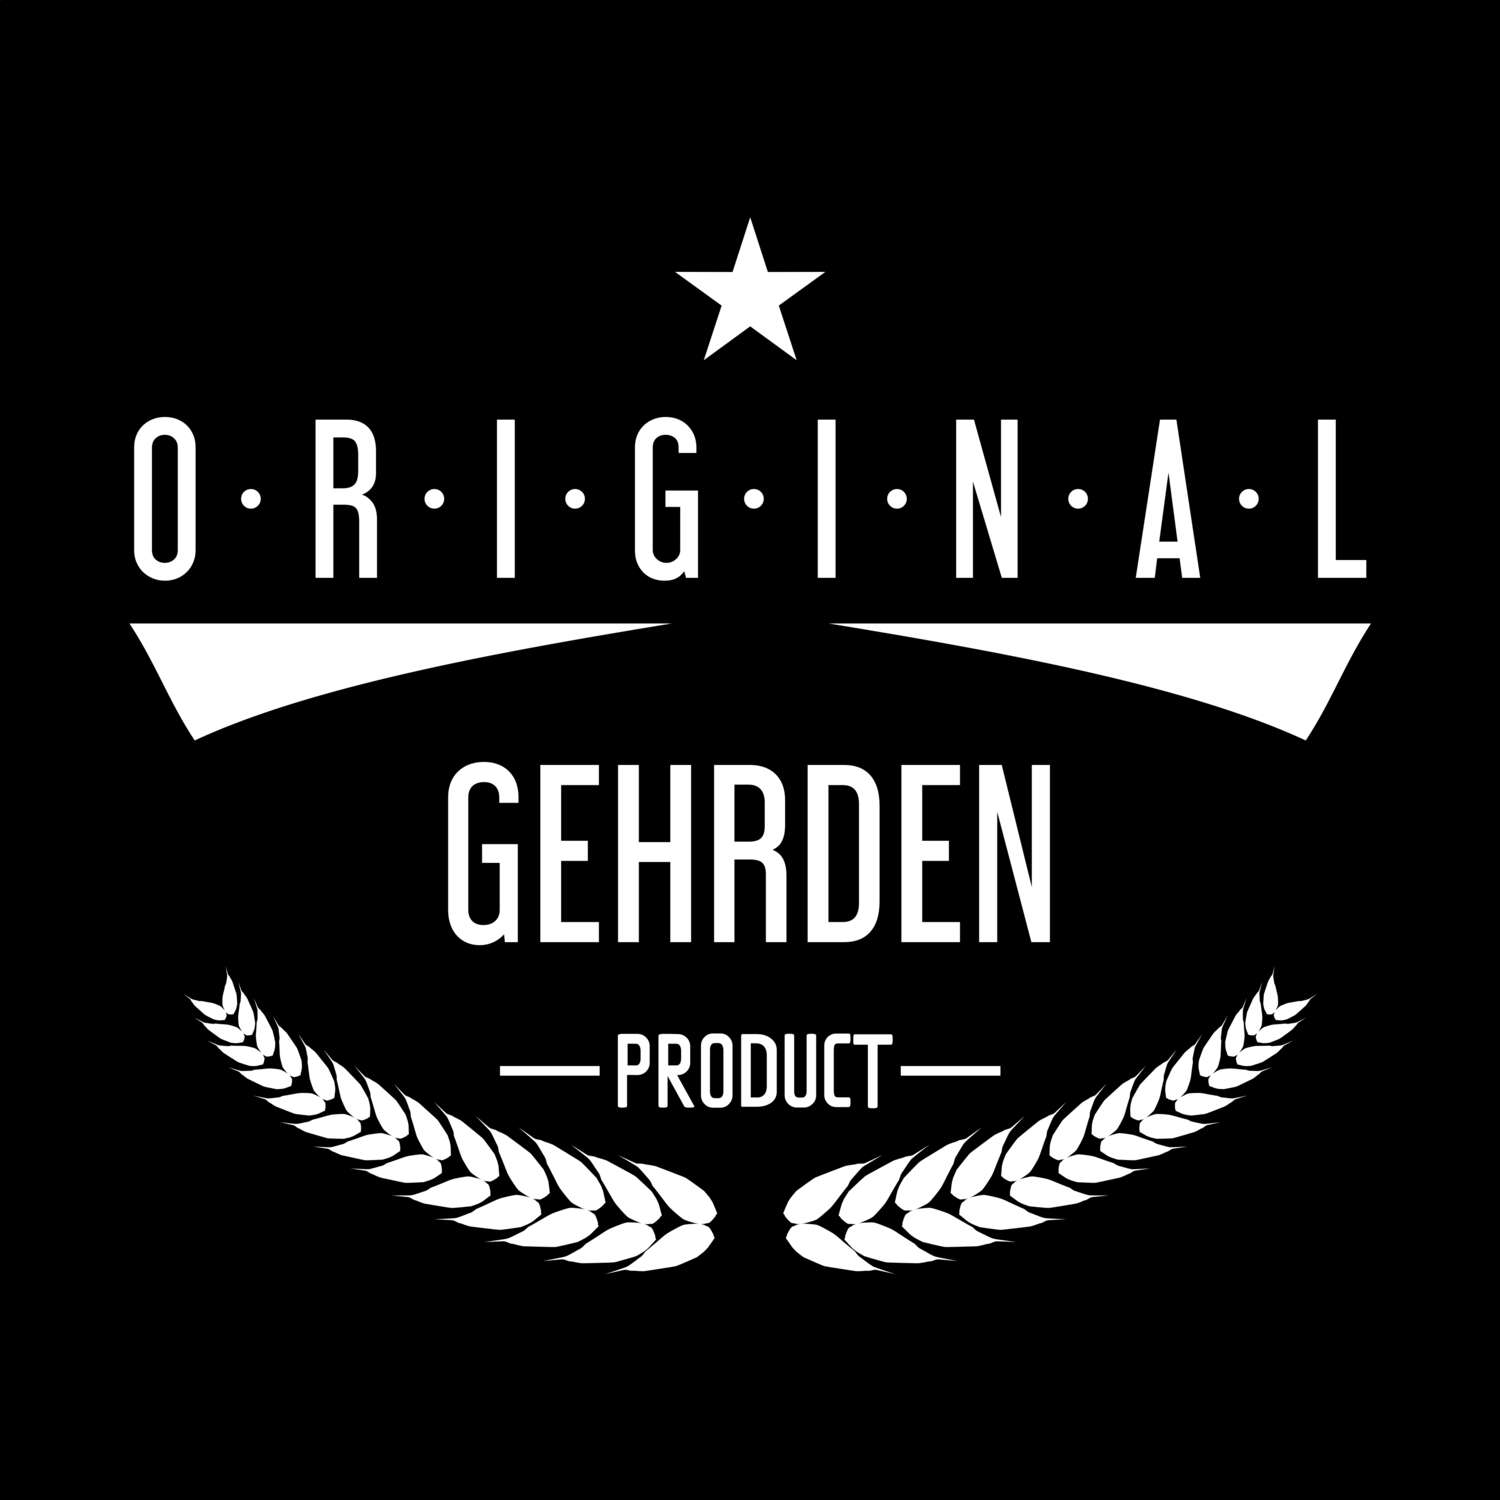 Gehrden T-Shirt »Original Product«